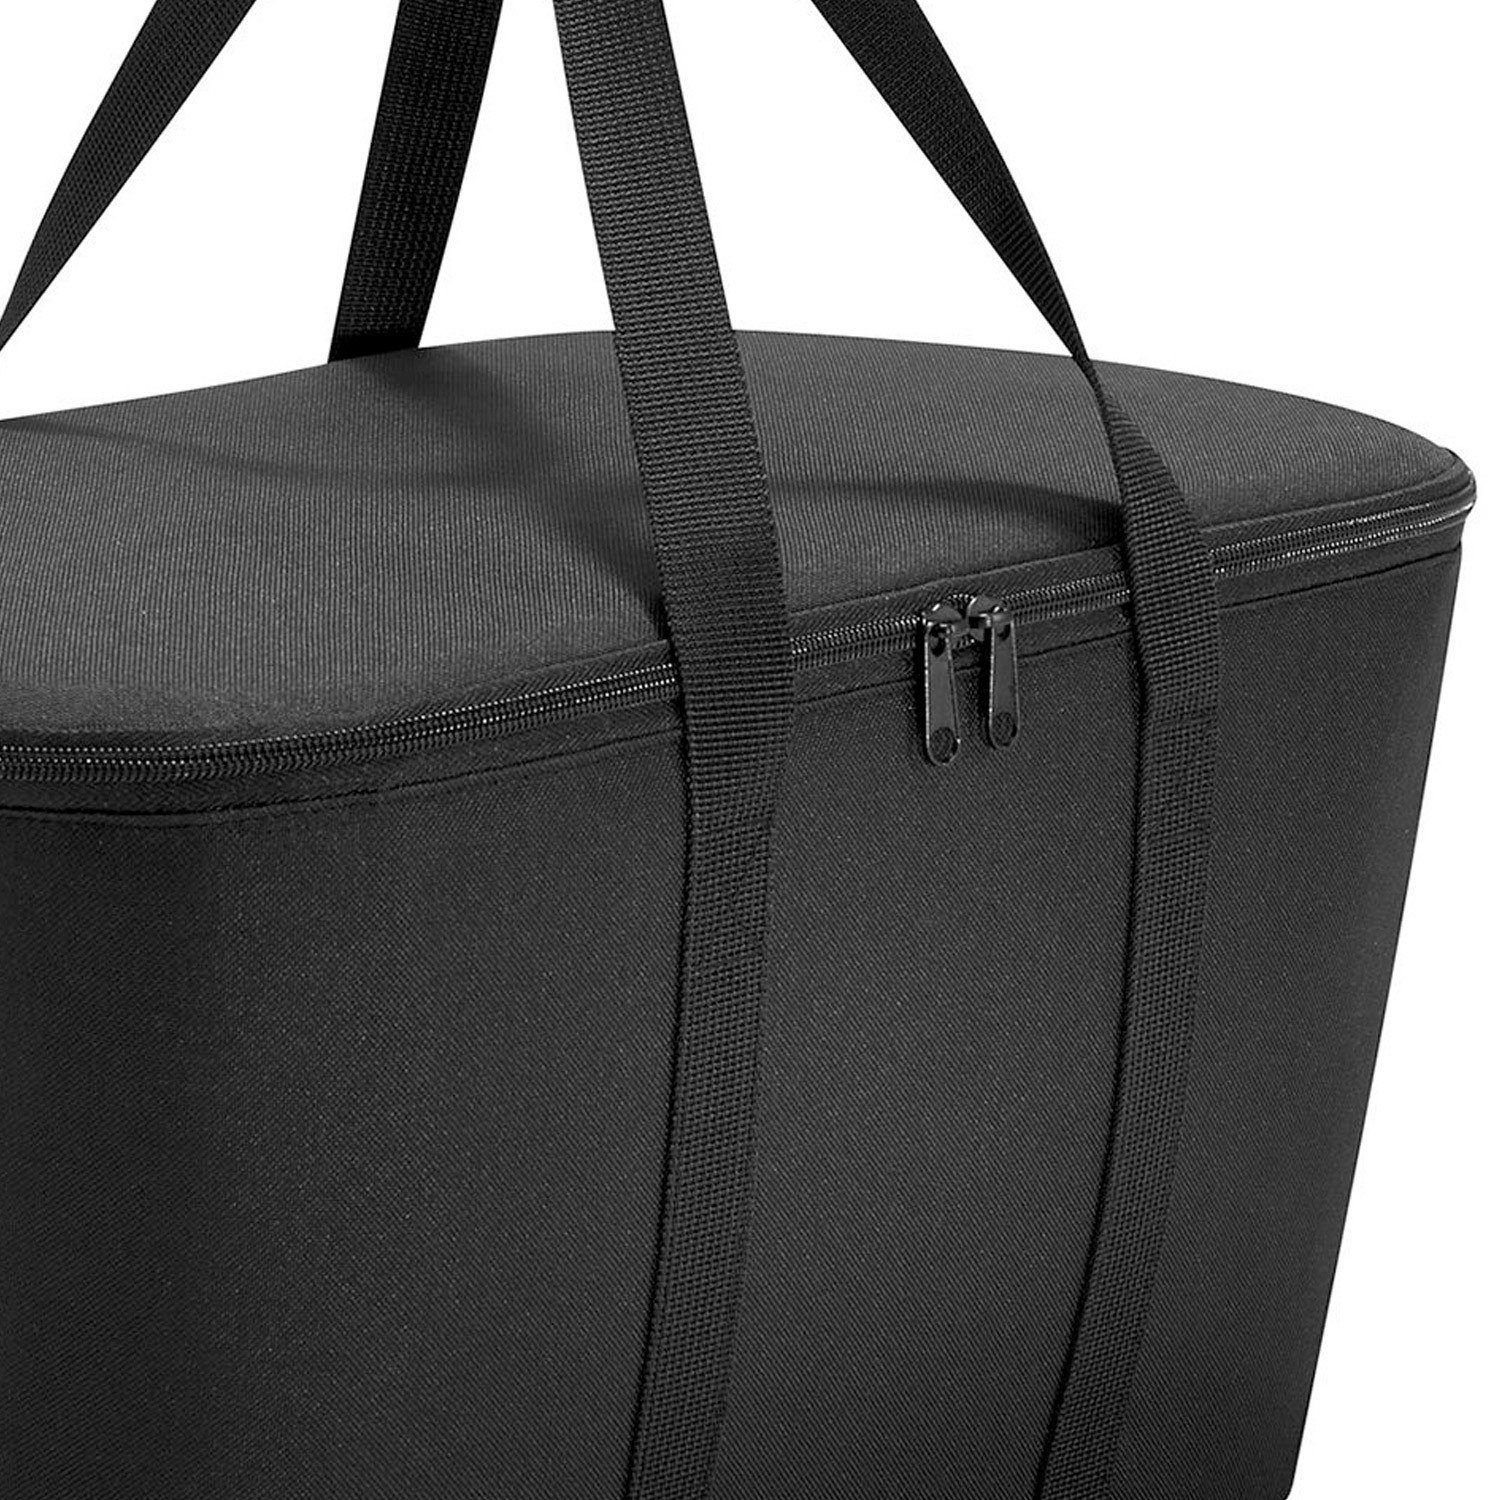 zur schwarz Thermo Farbe coolerbag - Einkaufskorb REISENTHEL® Wahl Picknickkorb 20 l Kühltasche Dekor